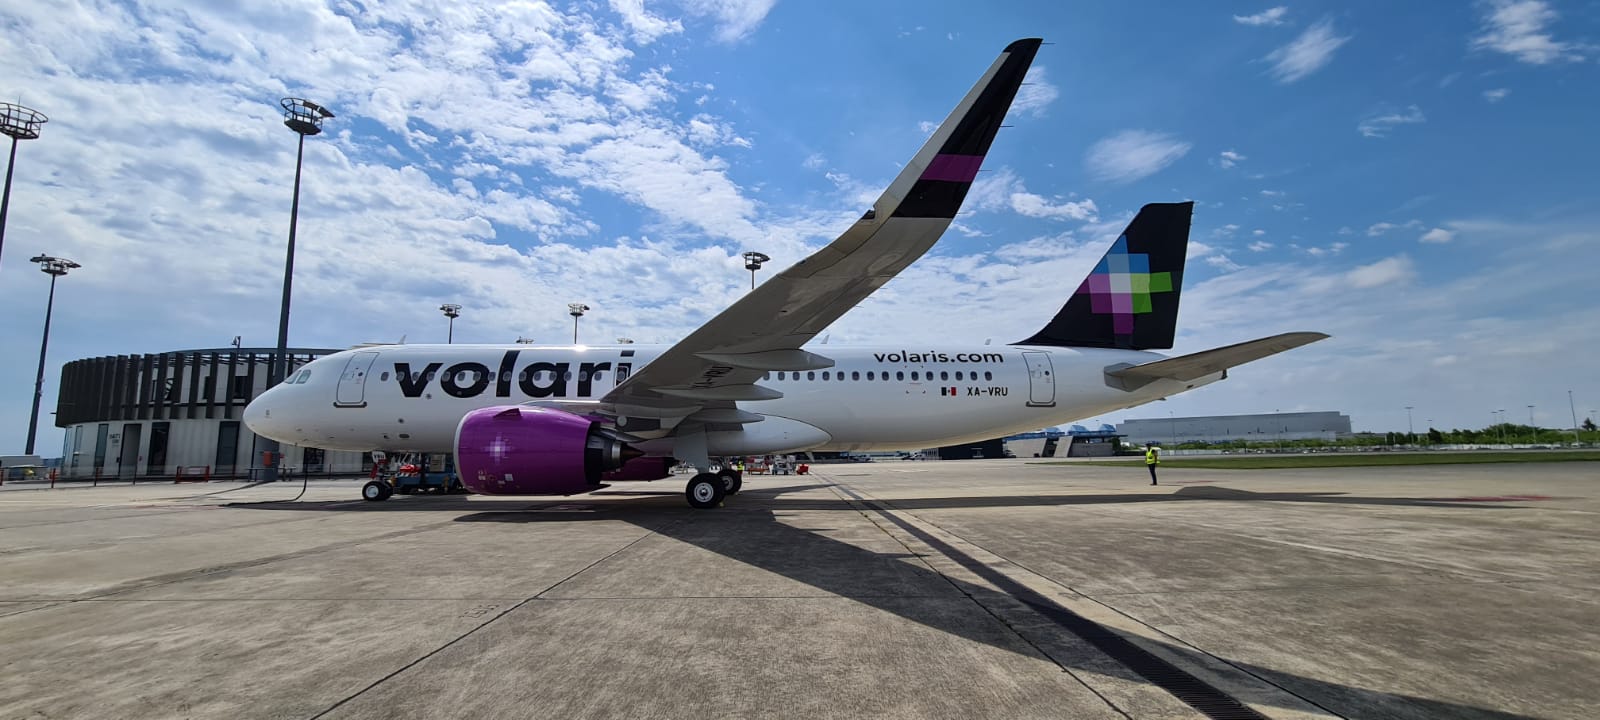 Volaris, la nueva aerolínea mexicana que aterriza en Colombia y Suramérica